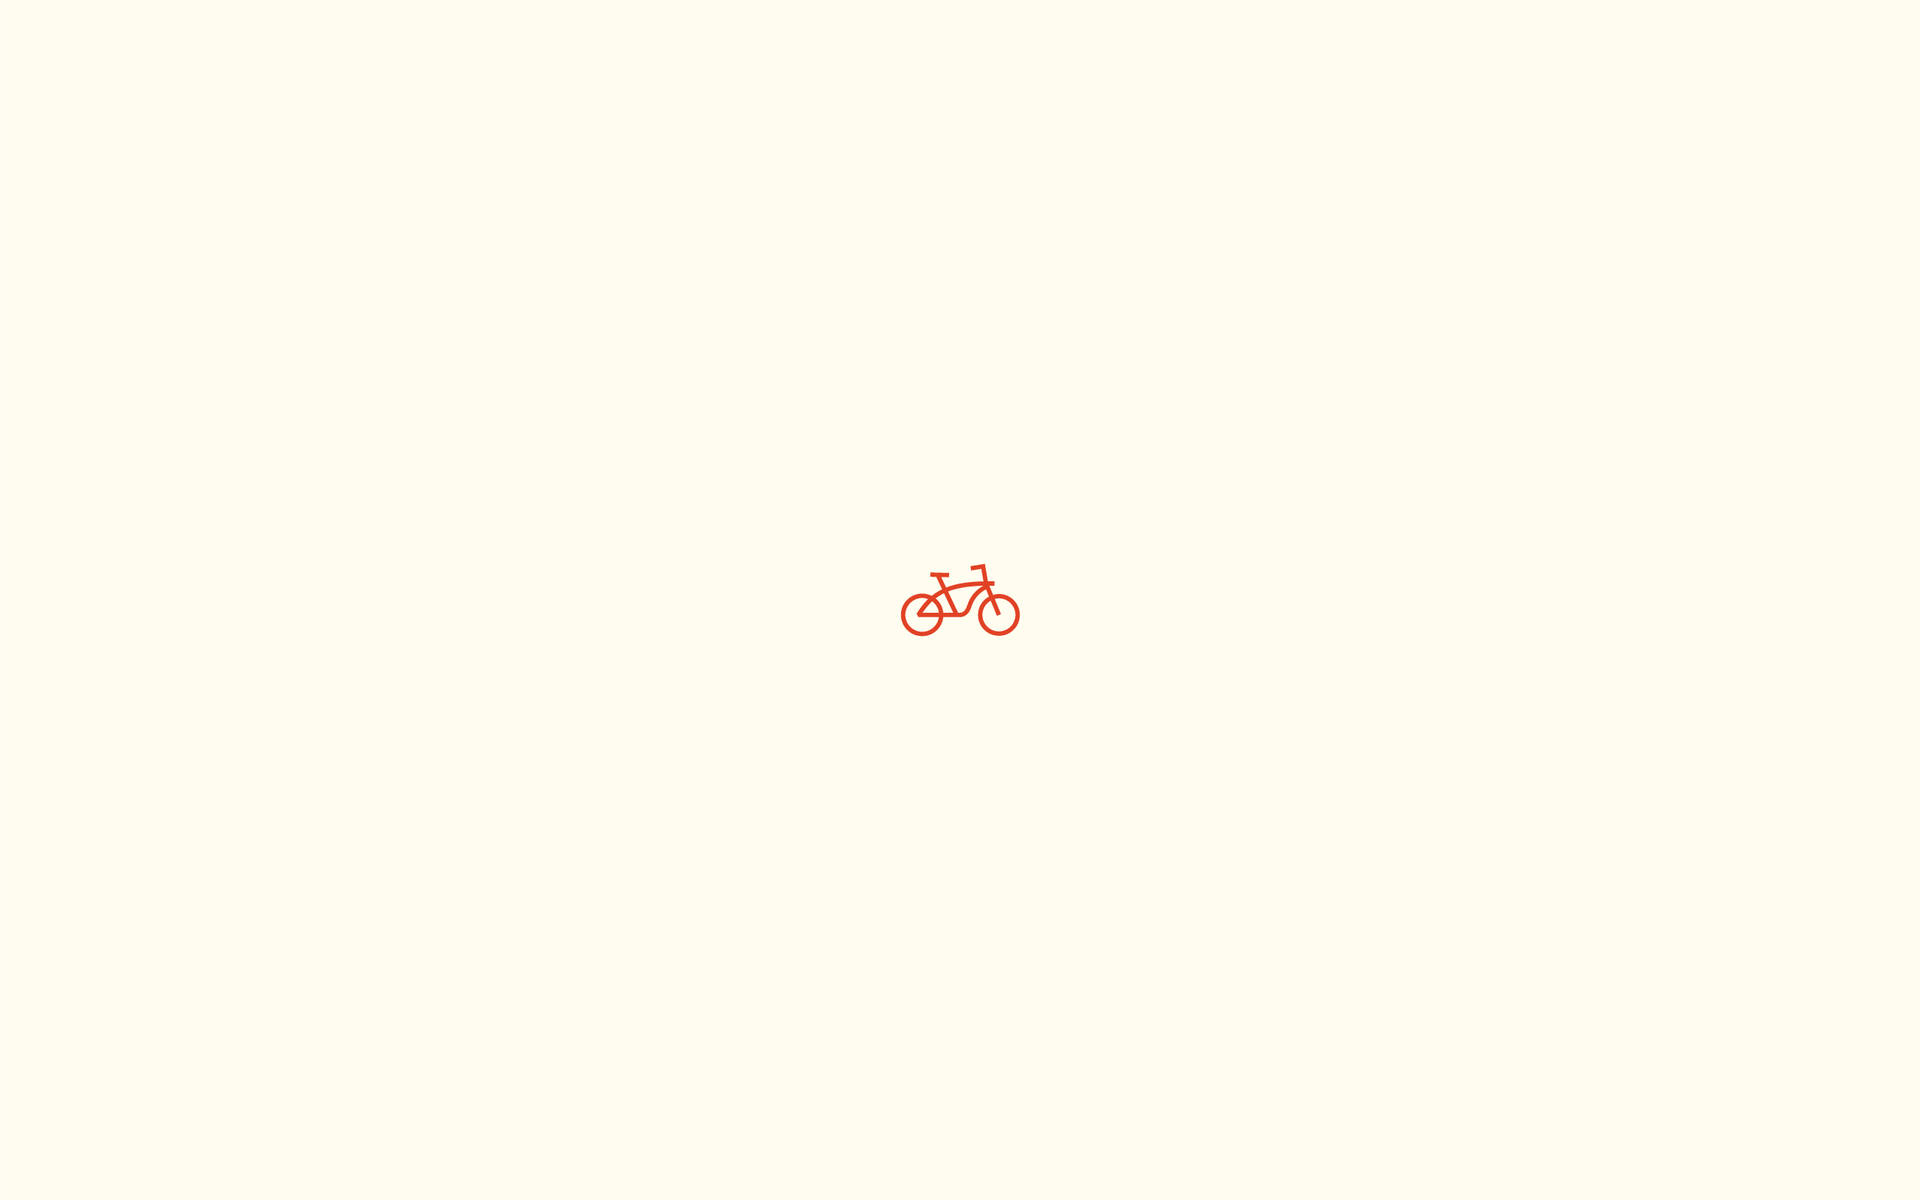 Bicicletapequena Em Cor Lisa. Papel de Parede